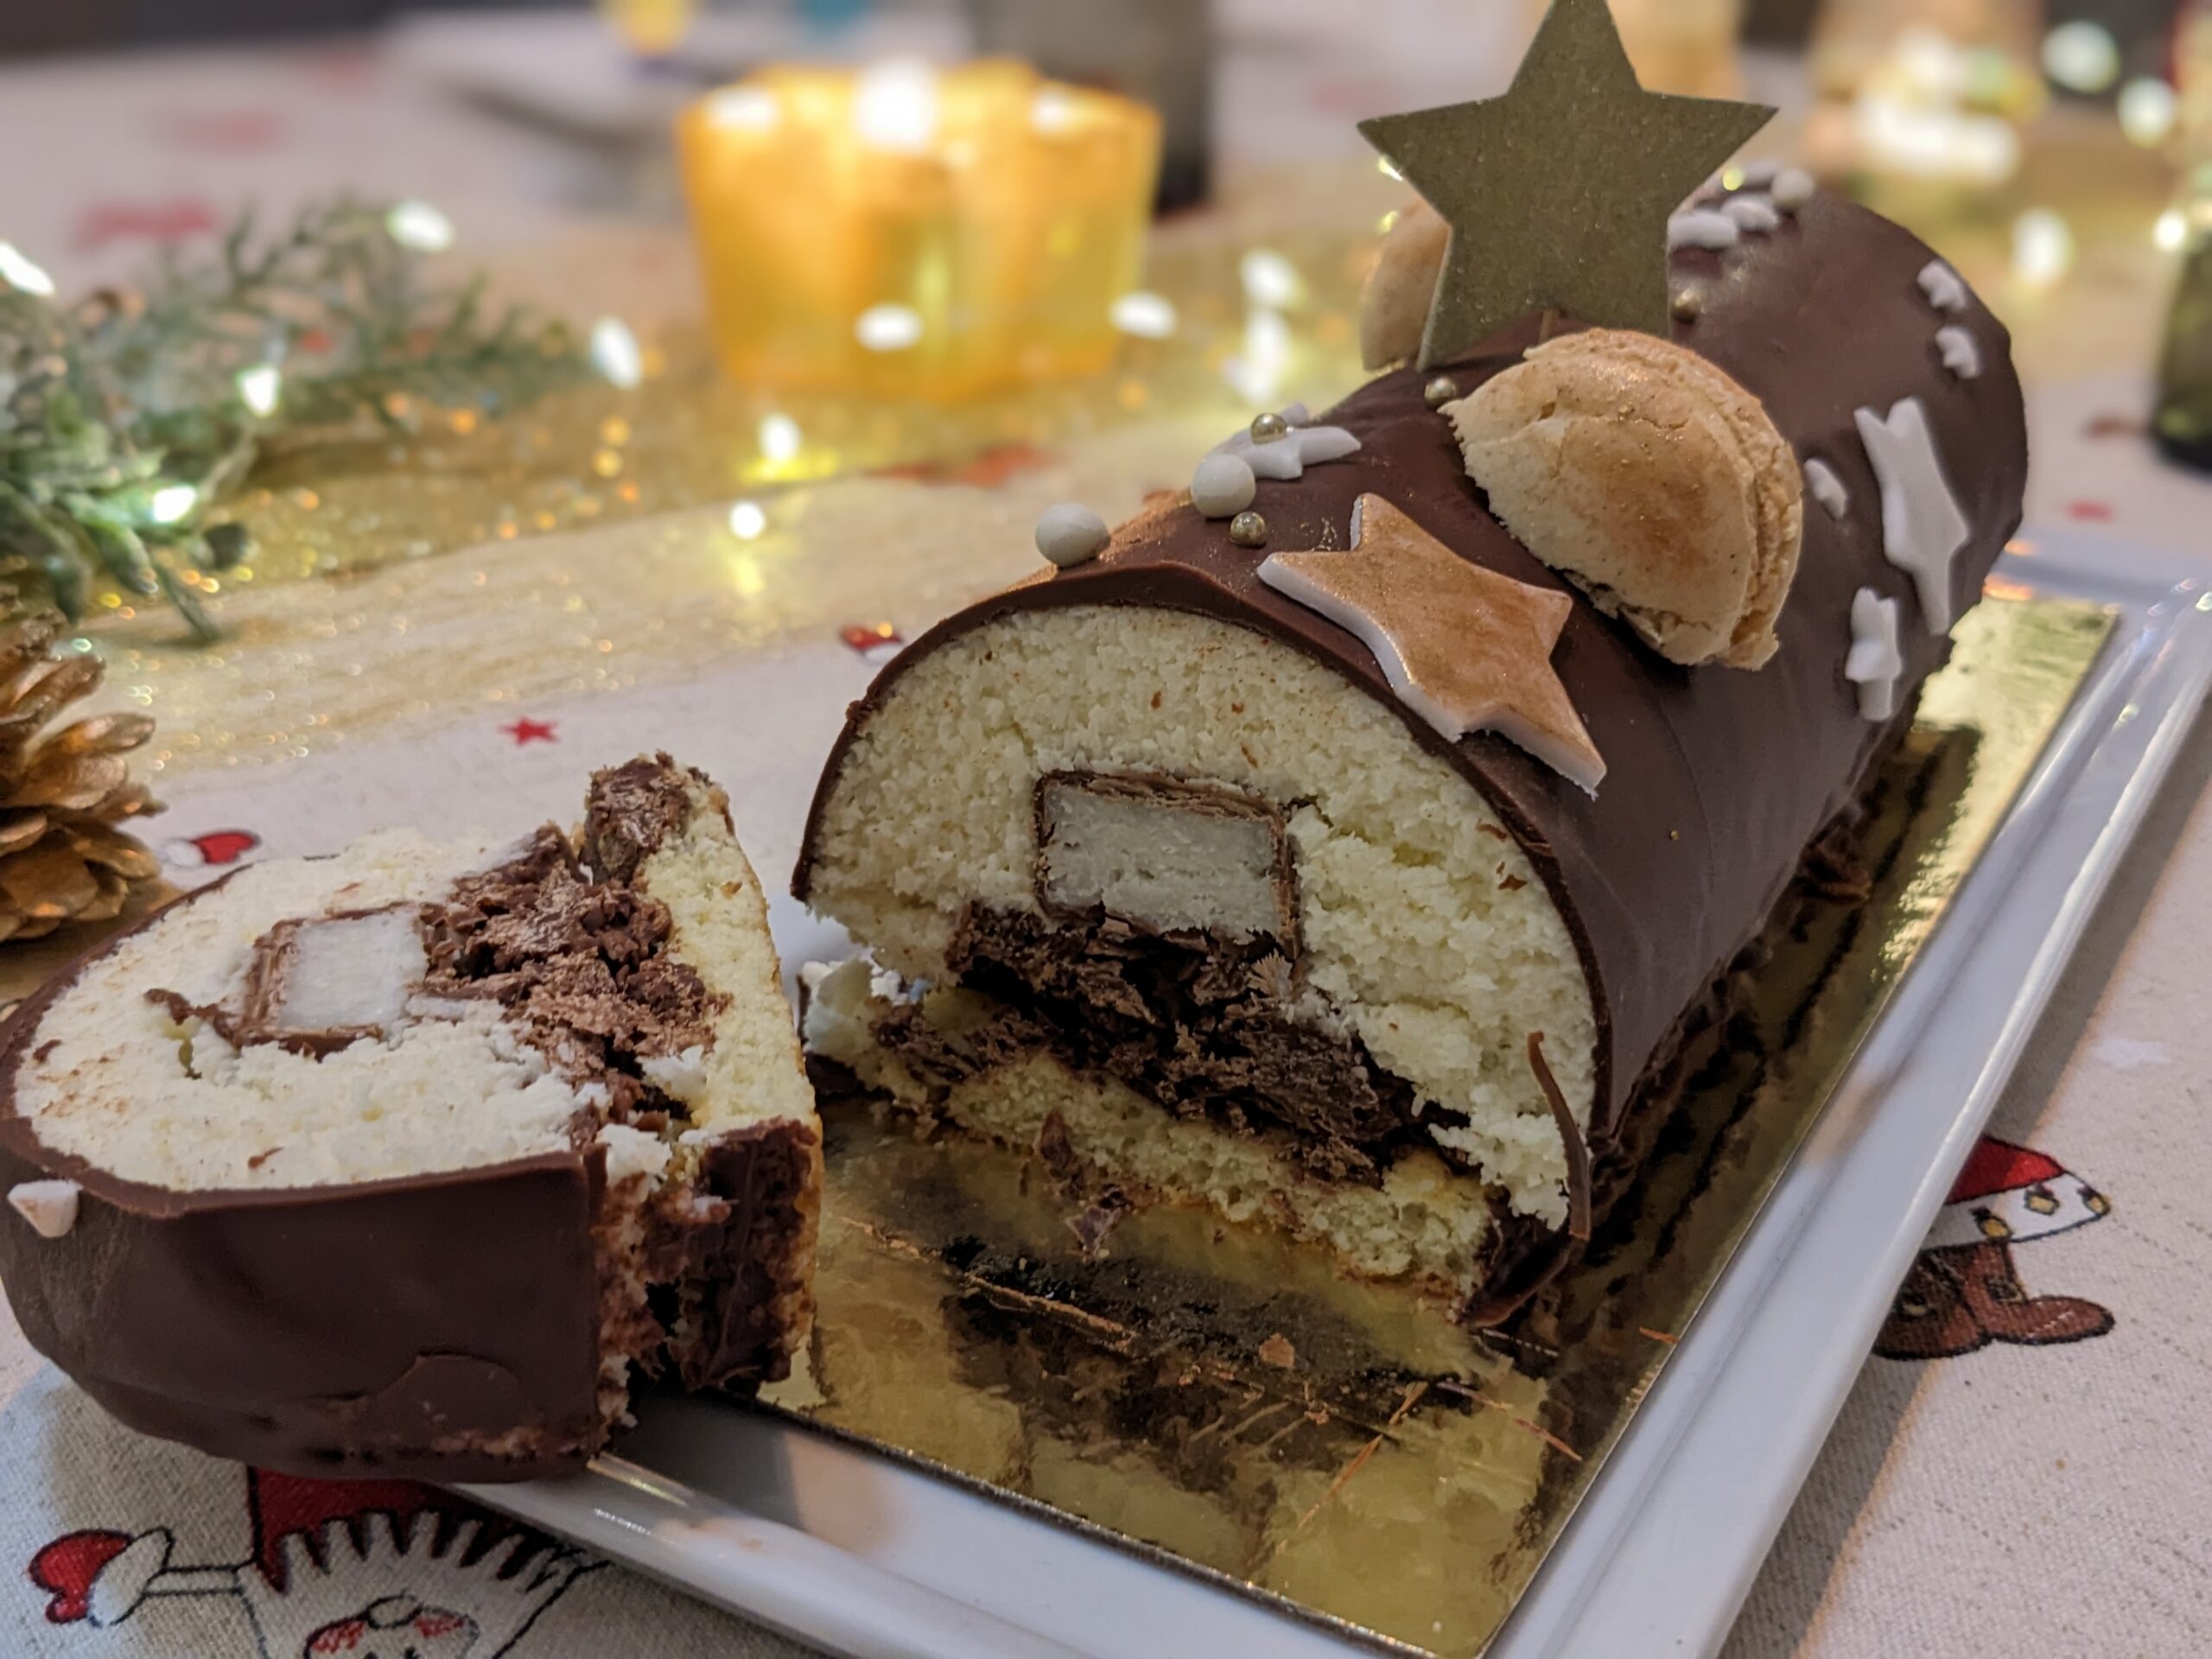 Bûche de Noël au Bounty noix de coco / chocolat découpée : on voit l'intérieur de la bûche avec un bounty coupé en deux